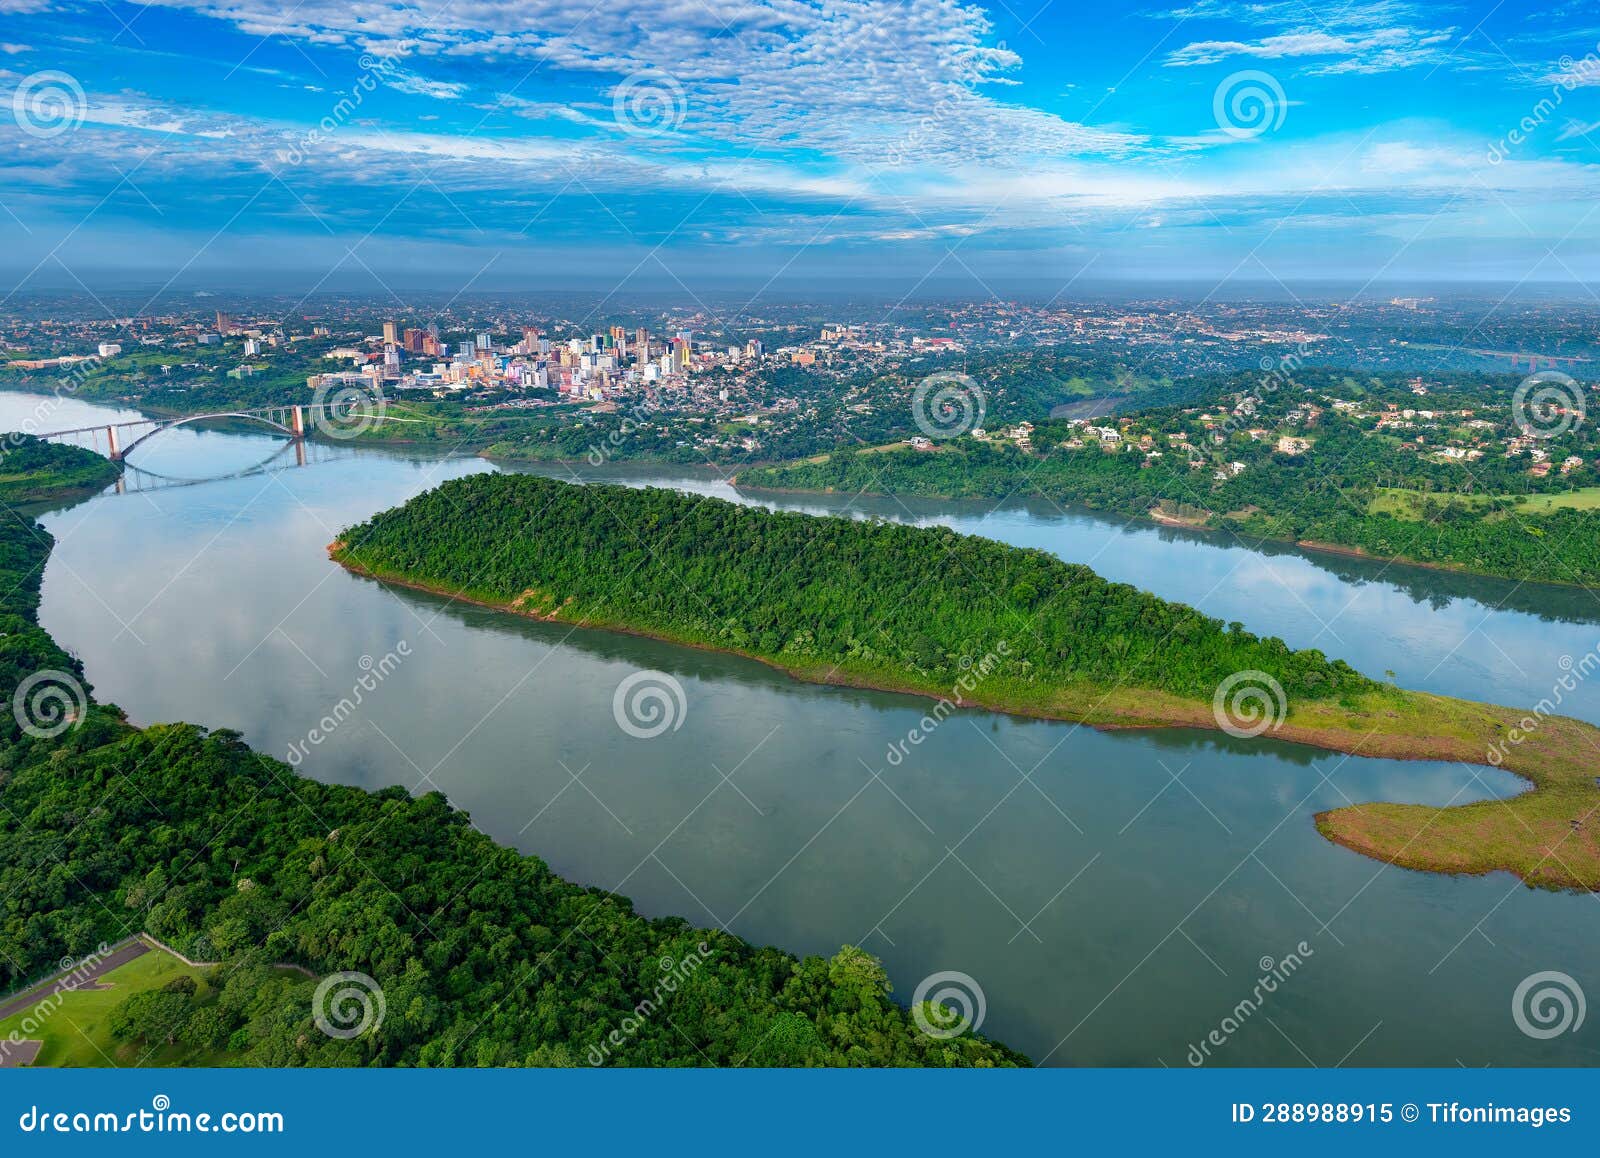 aerial view of the paraguayan city of ciudad del este